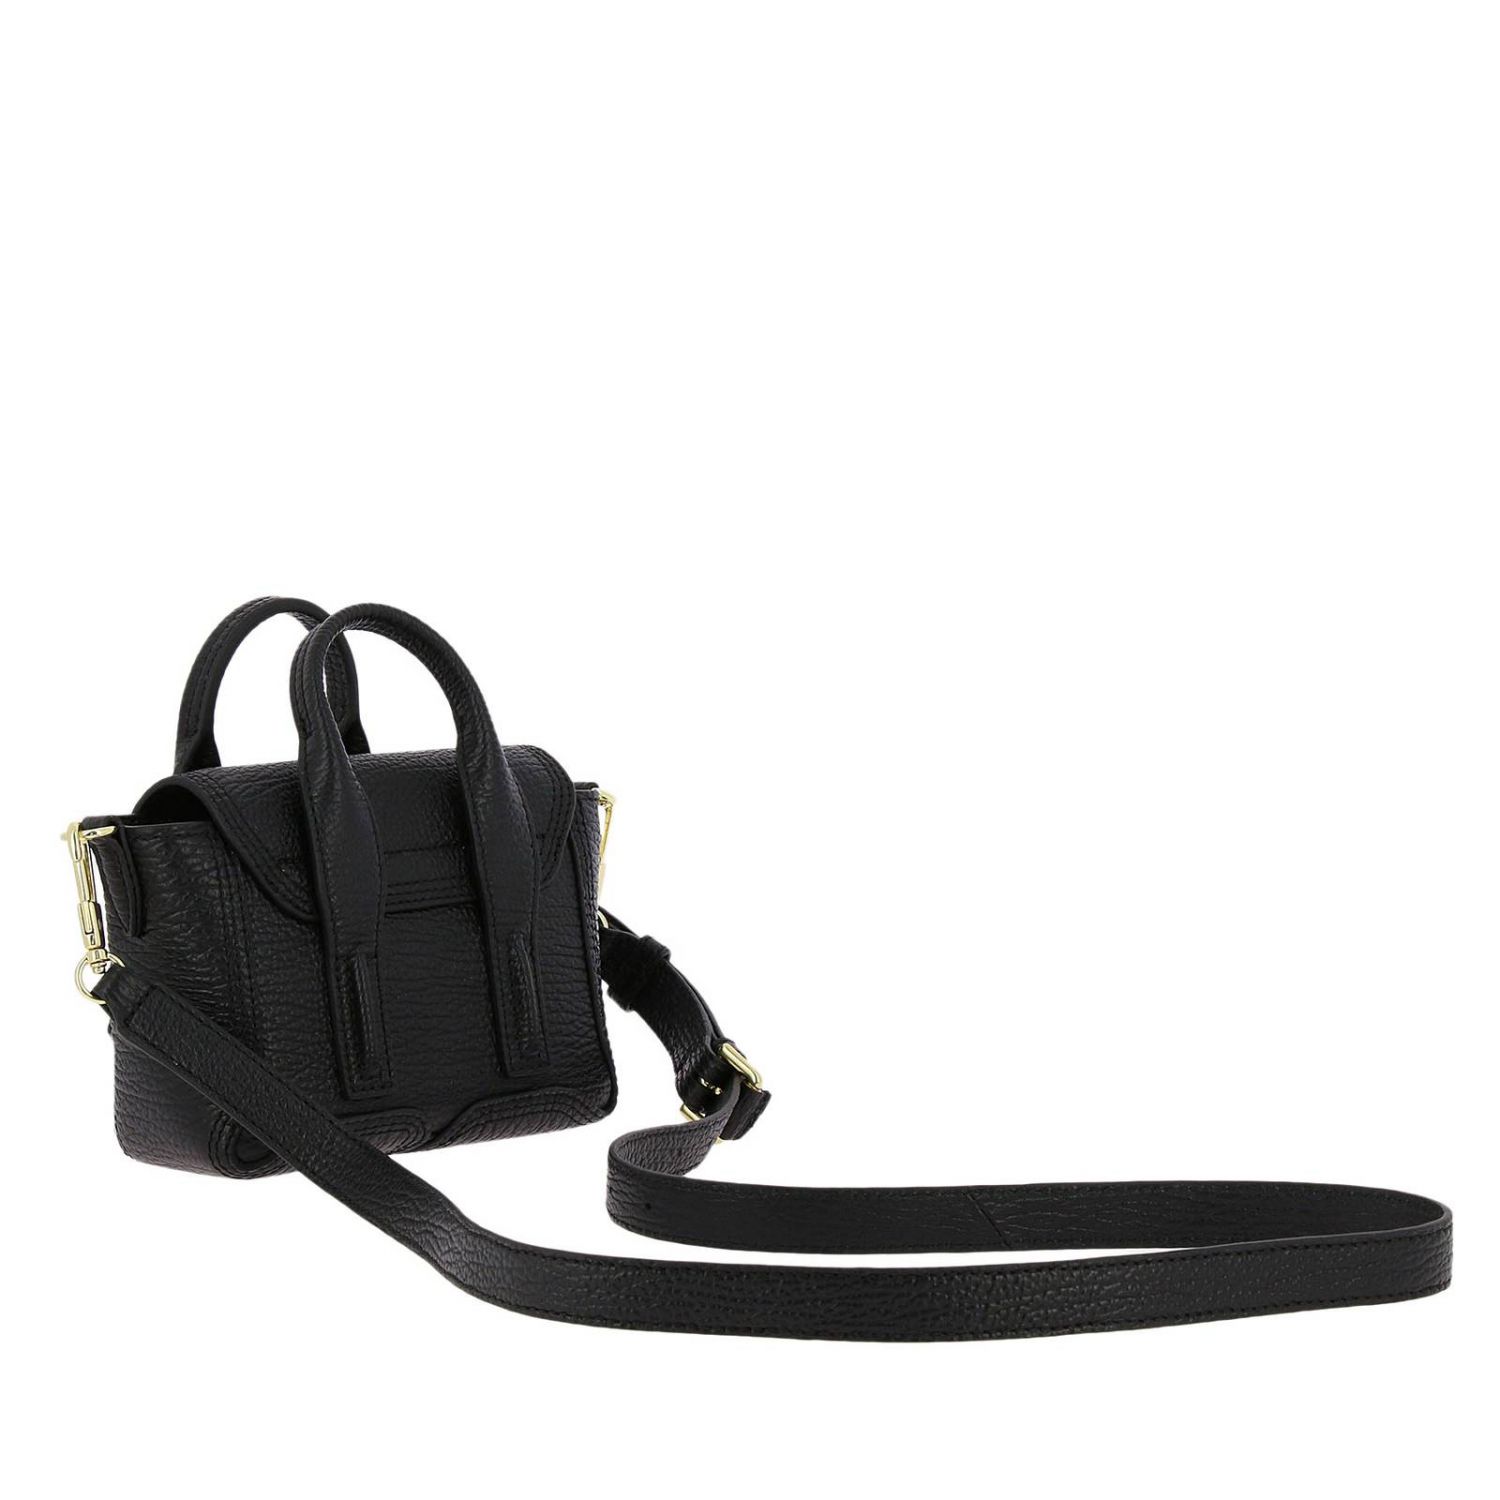 3.1 Phillip Lim Outlet: Shoulder bag women - Black | Mini Bag 3.1 ...